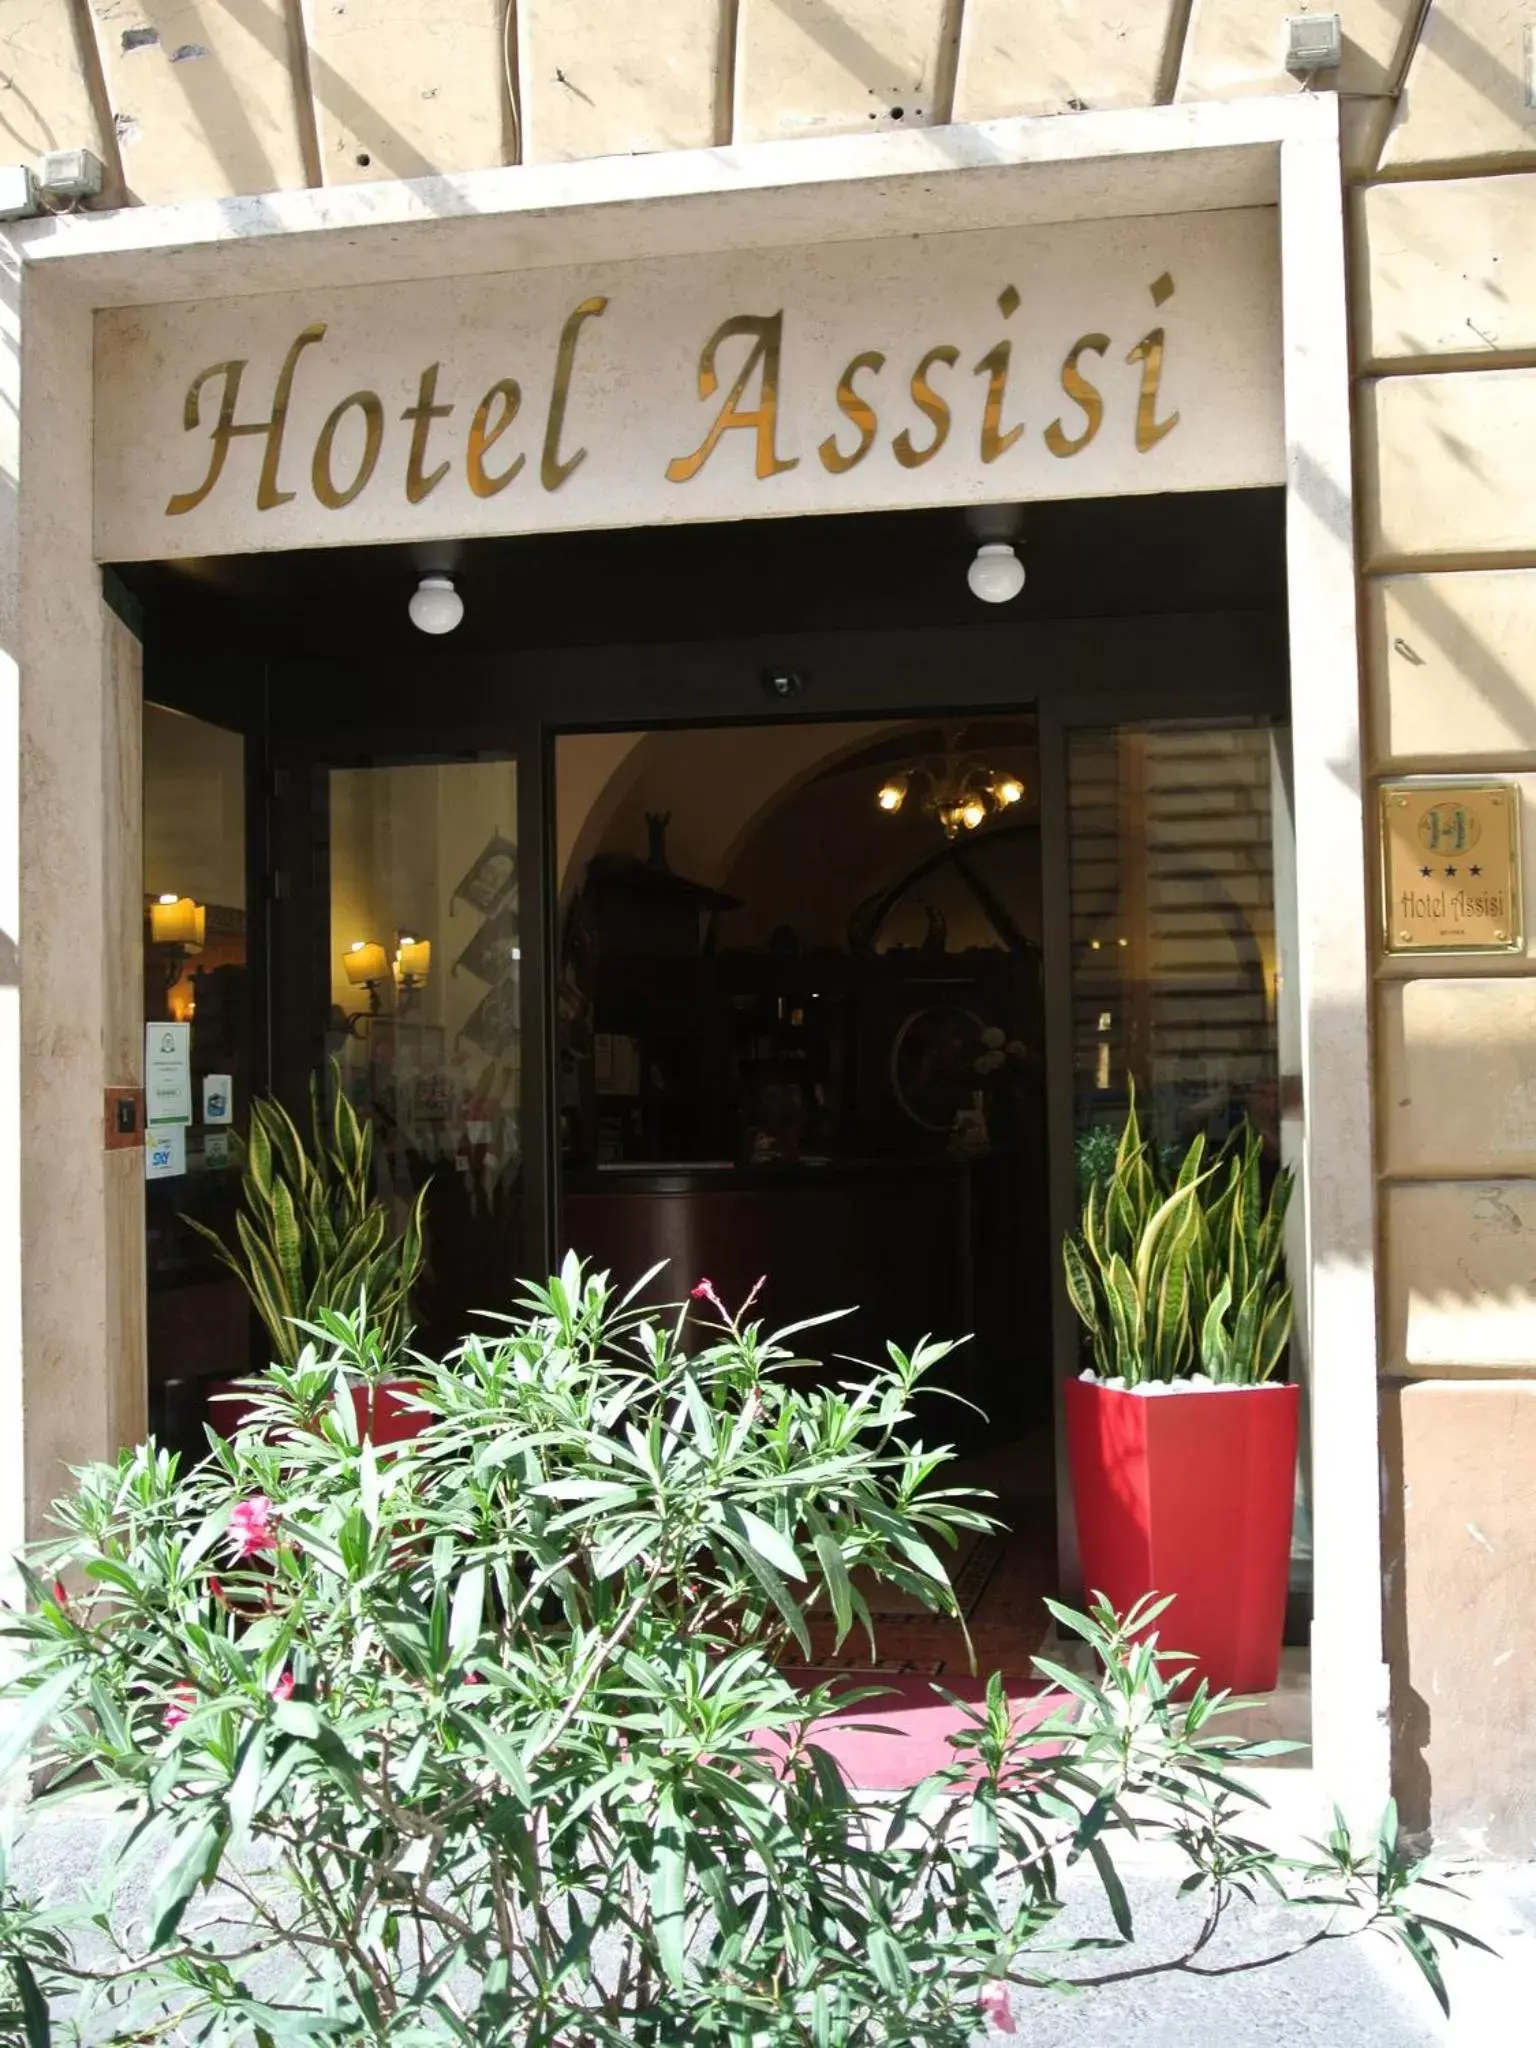 Facade/entrance in Hotel Assisi